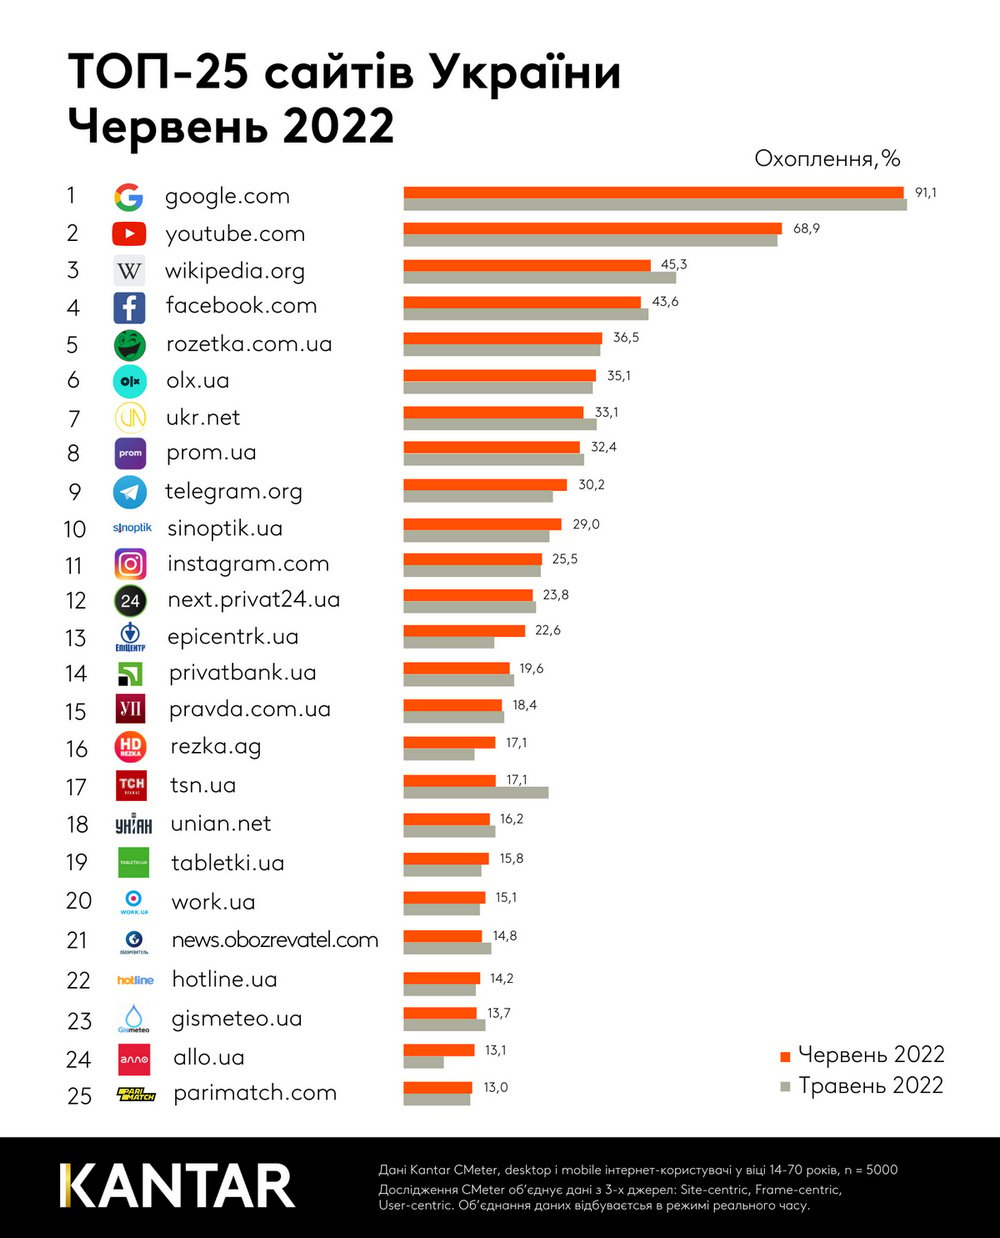 Ukrainians return to online shopping: top 25 sites of Ukraine in June 2022